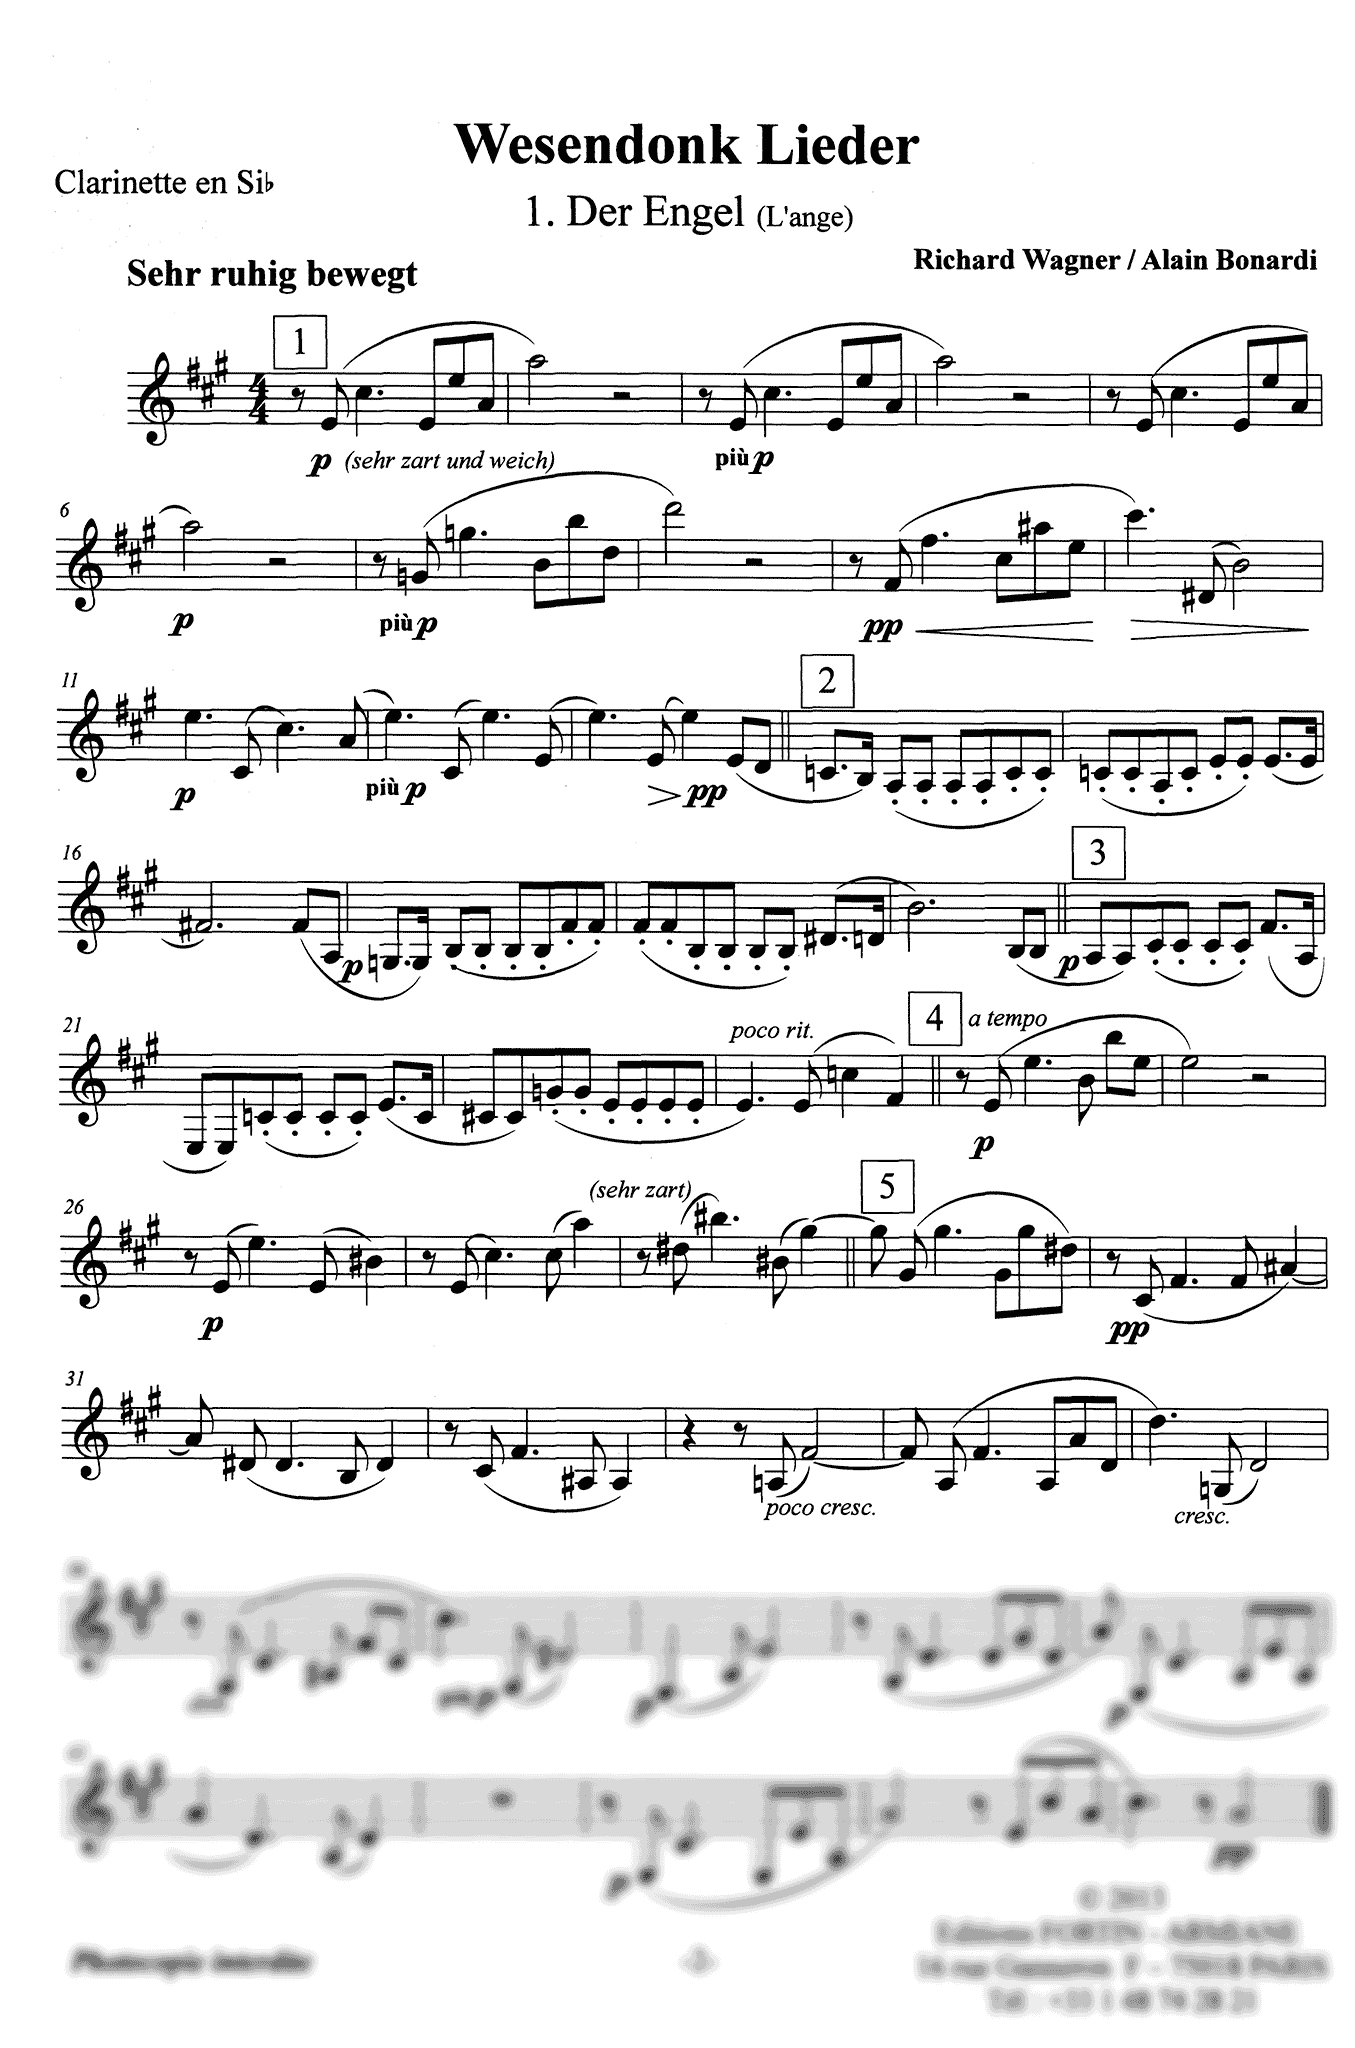 Wagner Wesendonck Lieder, WWV 91 arrangement Bonardi clarinet part